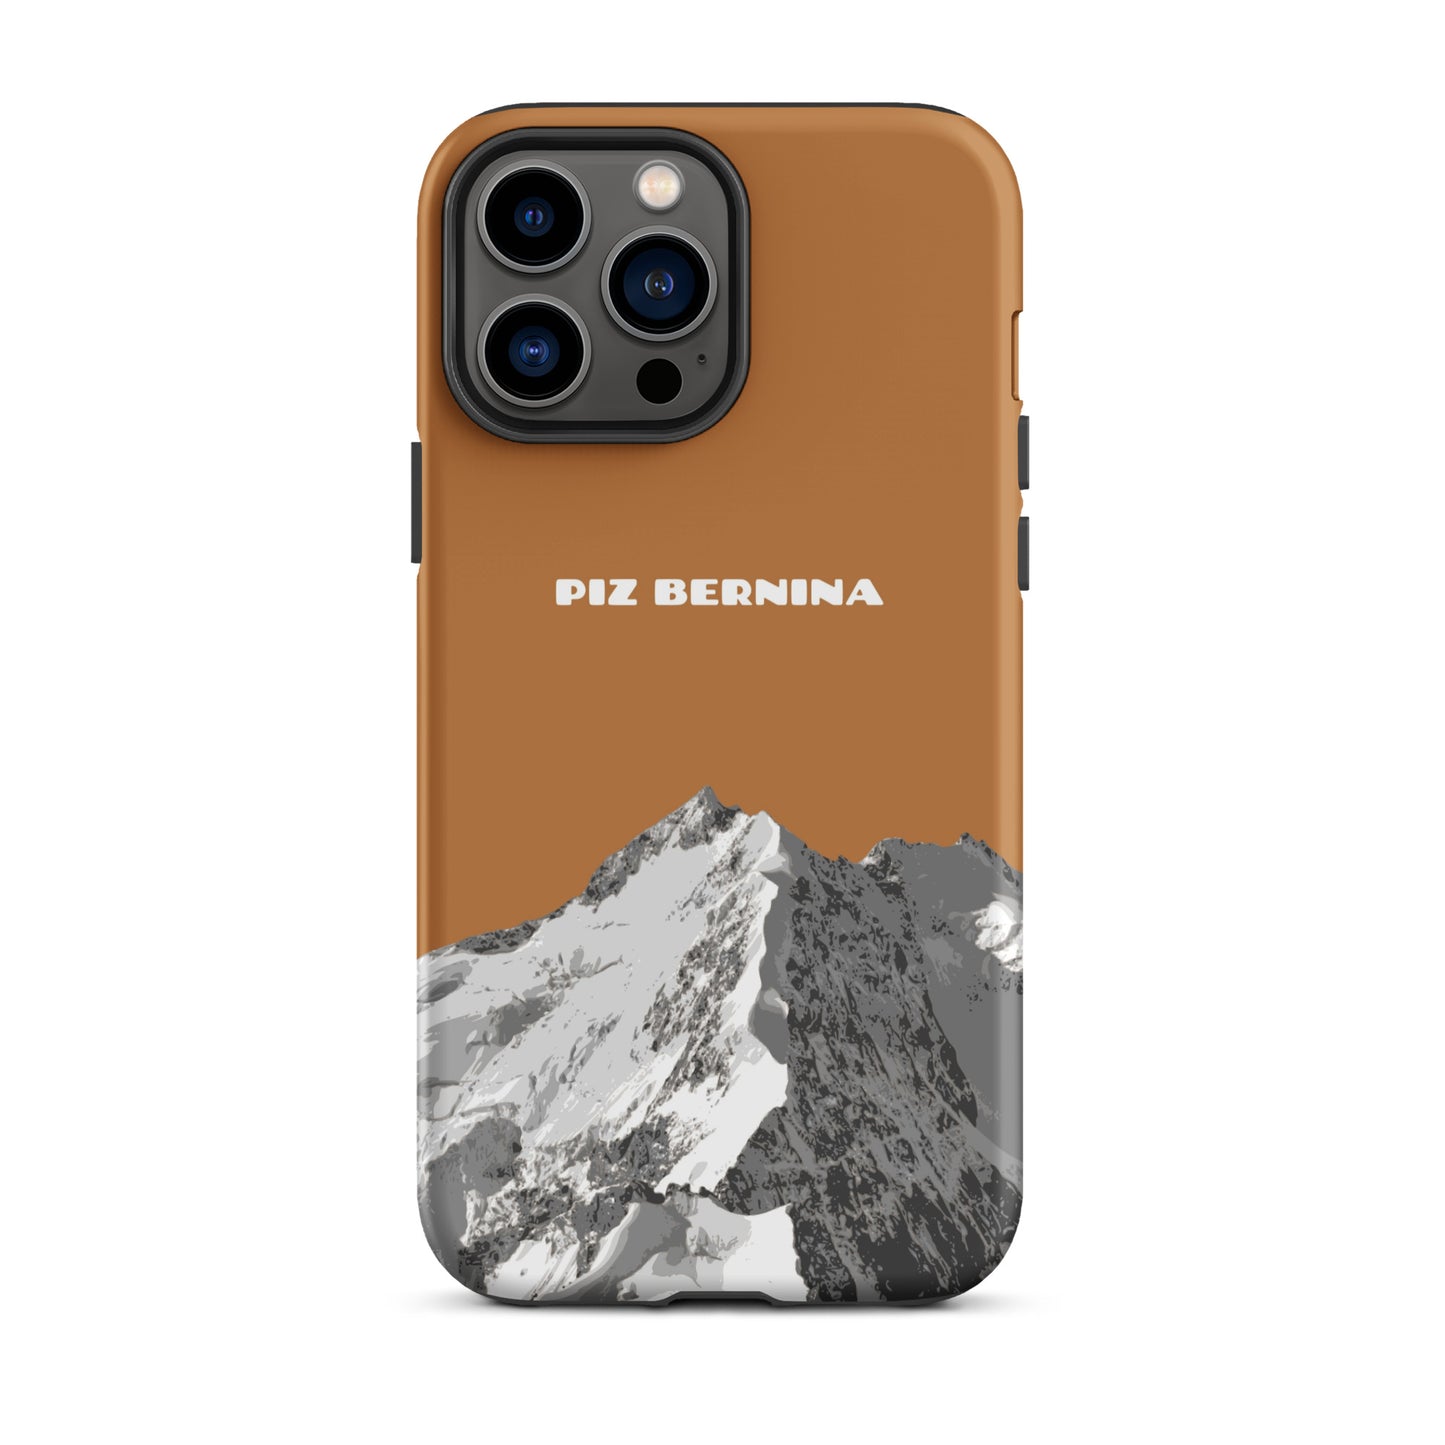 Hülle für das iPhone 13 Pro Max von Apple in der Farbe Kupfer, dass den Piz Bernina in Graubünden zeigt.